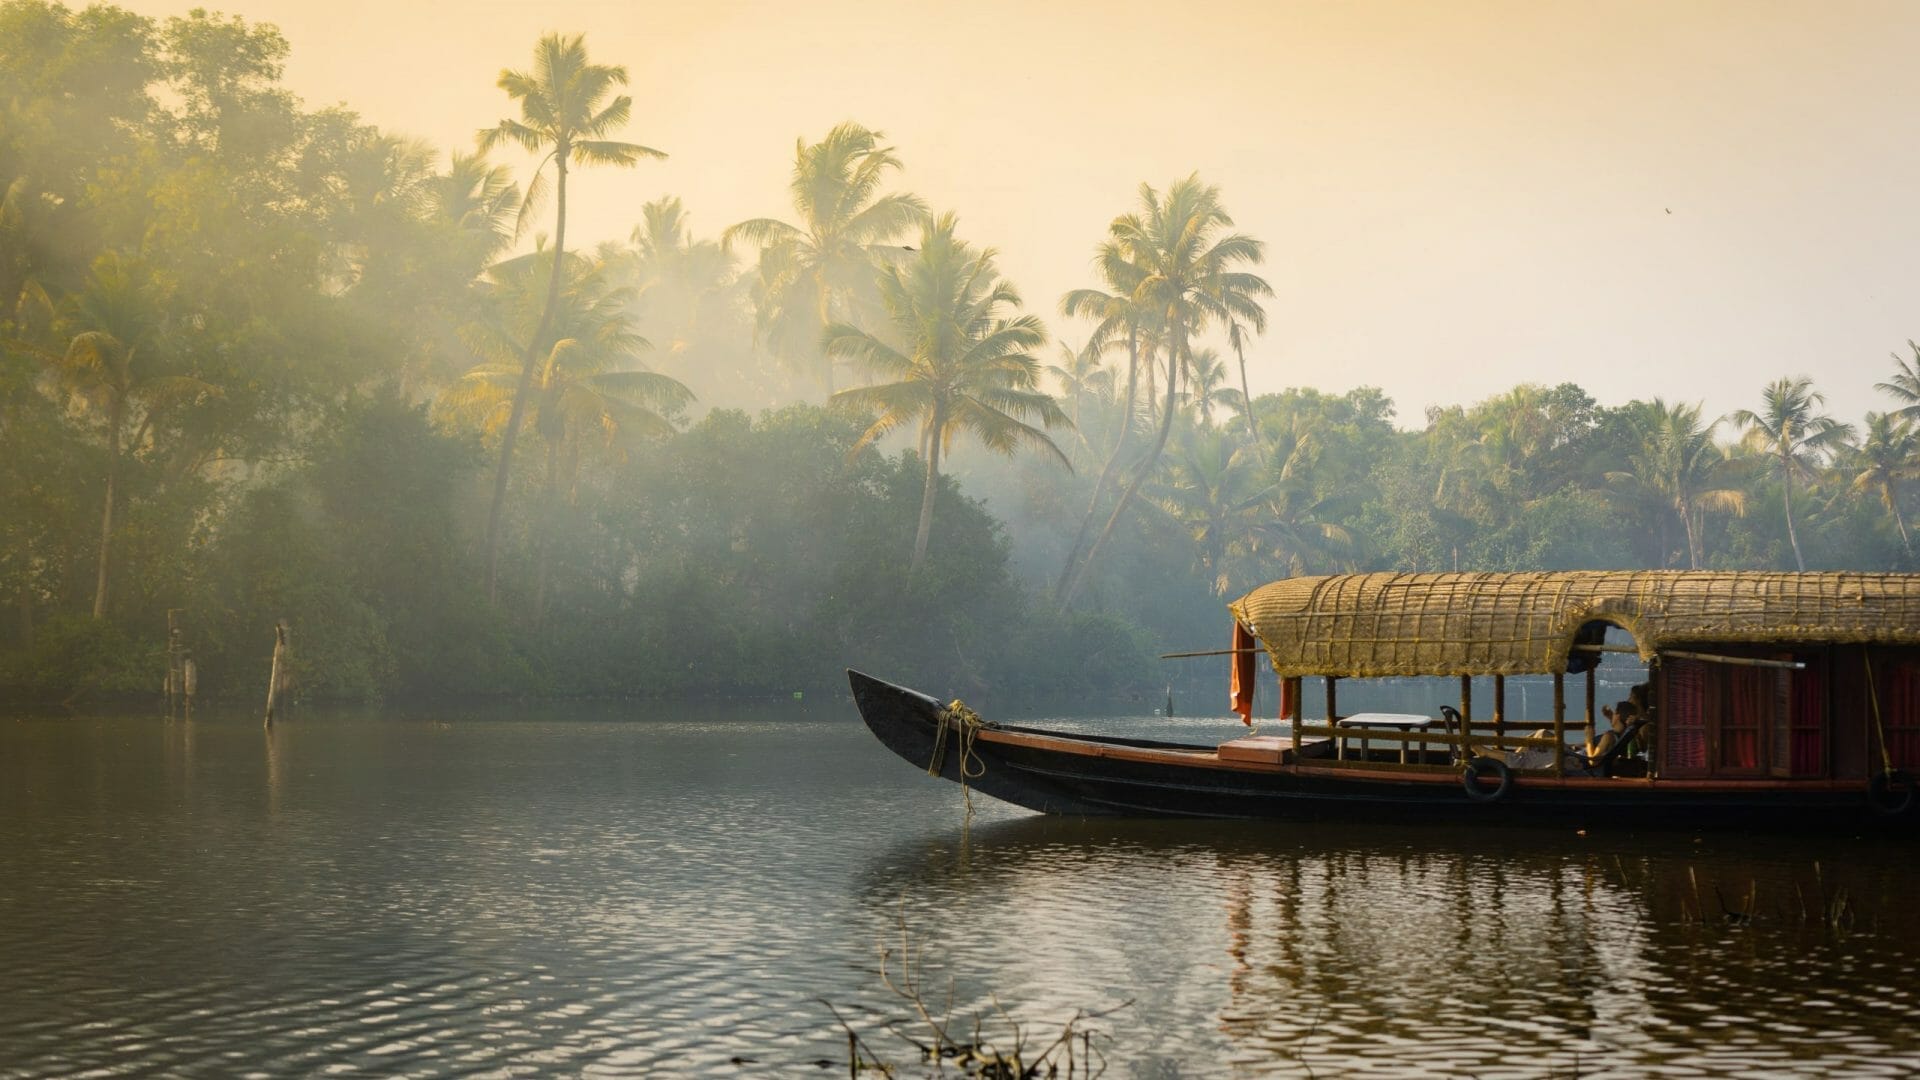 Backwater Kerala India